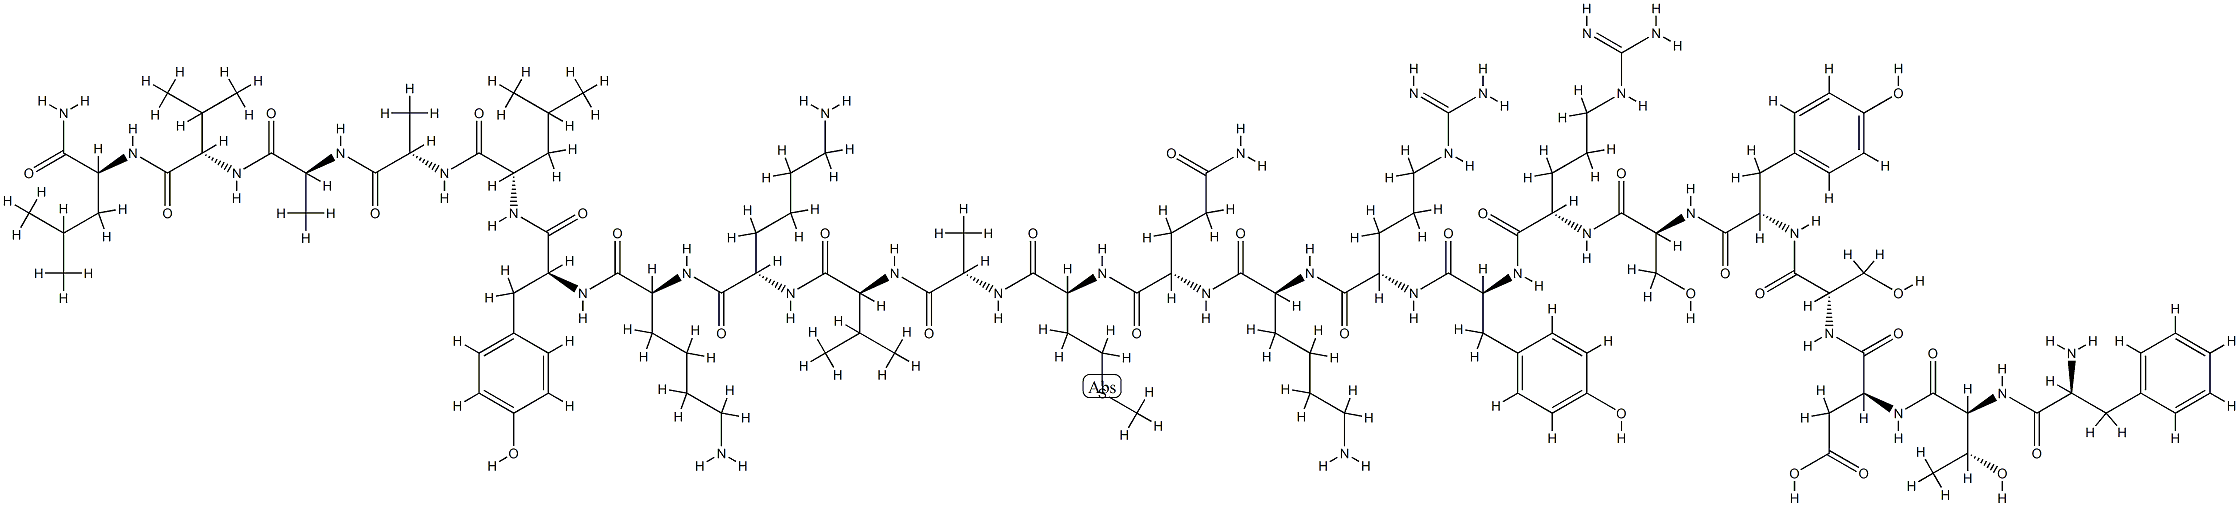 L-Phe-L-Thr-L-Asp-L-Ser-L-Tyr-L-Ser-L-Arg-L-Tyr-L-Arg-L-Lys-L-Gln-L-Met-L-Ala-L-Val-L-Lys-L-Lys-L-Tyr-L-Leu-L-Ala-L-Ala-L-Val-L-Leu-NH2 化学構造式